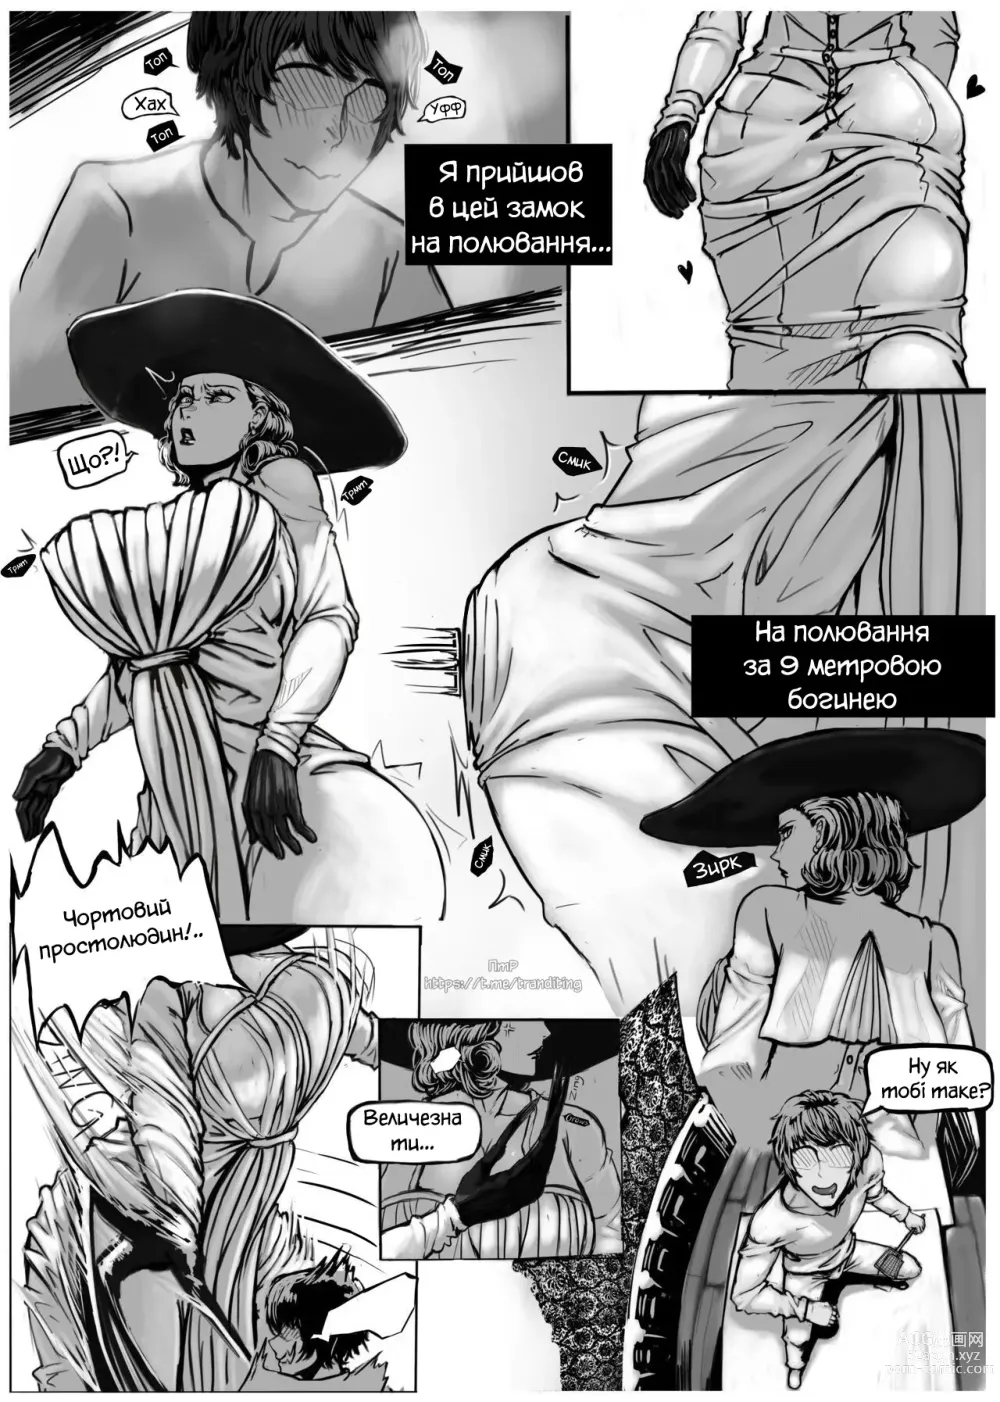 Page 4 of doujinshi Домінуючи над Діміреску